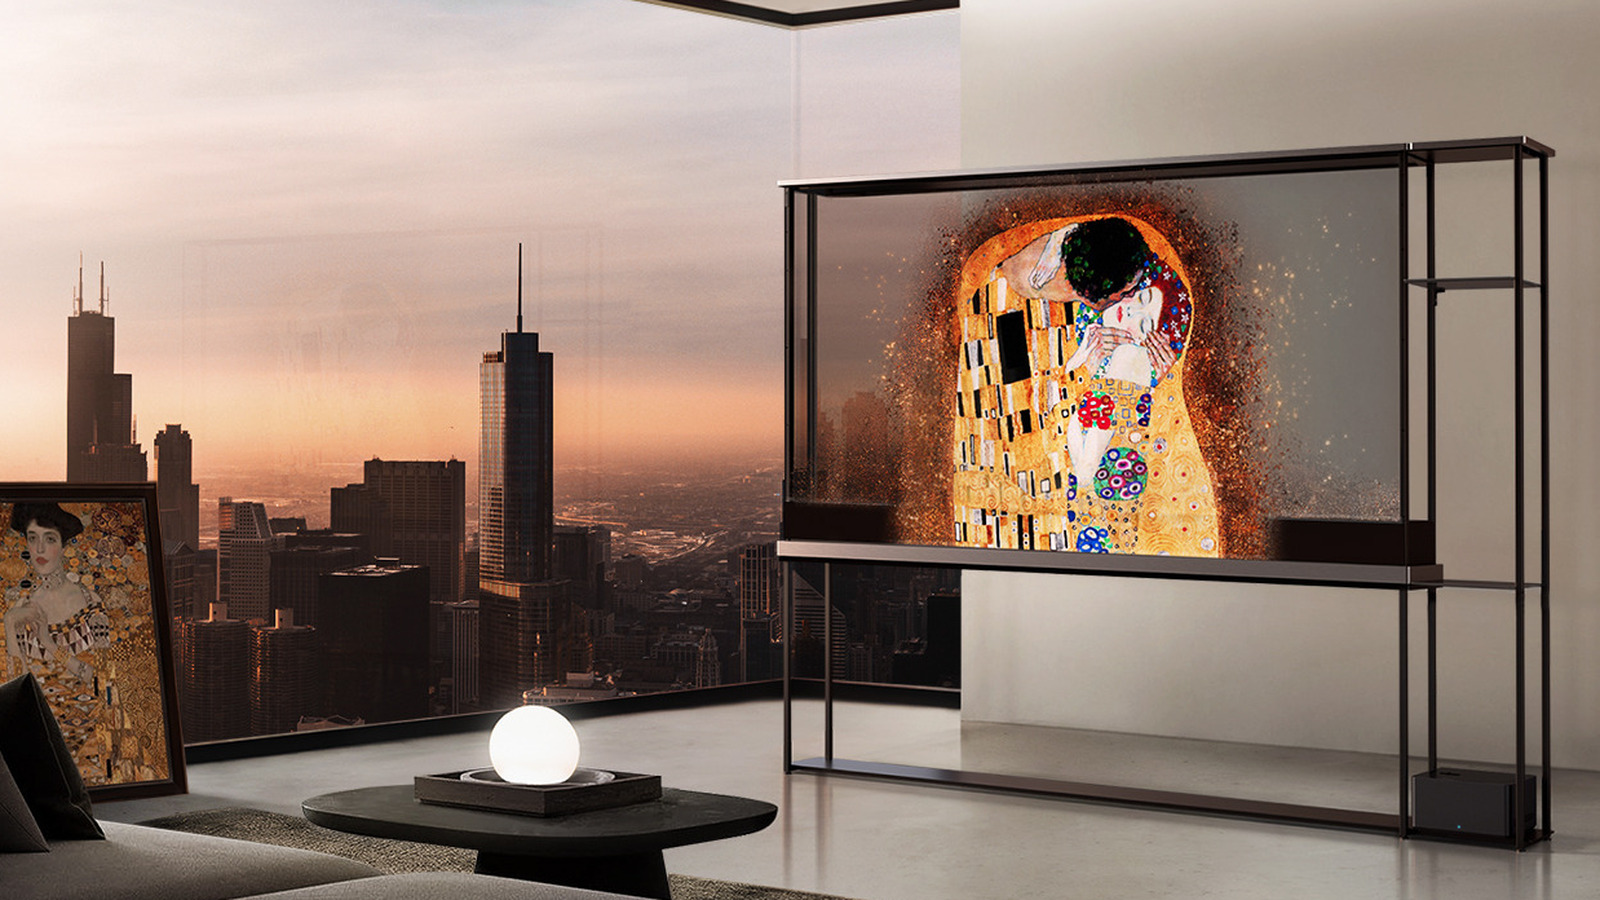 ال‌جی تلویزیون OLED شفاف و چشمگیر را معرفی کرد، اما قیمت هنوز یک علامت سوال بزرگ است